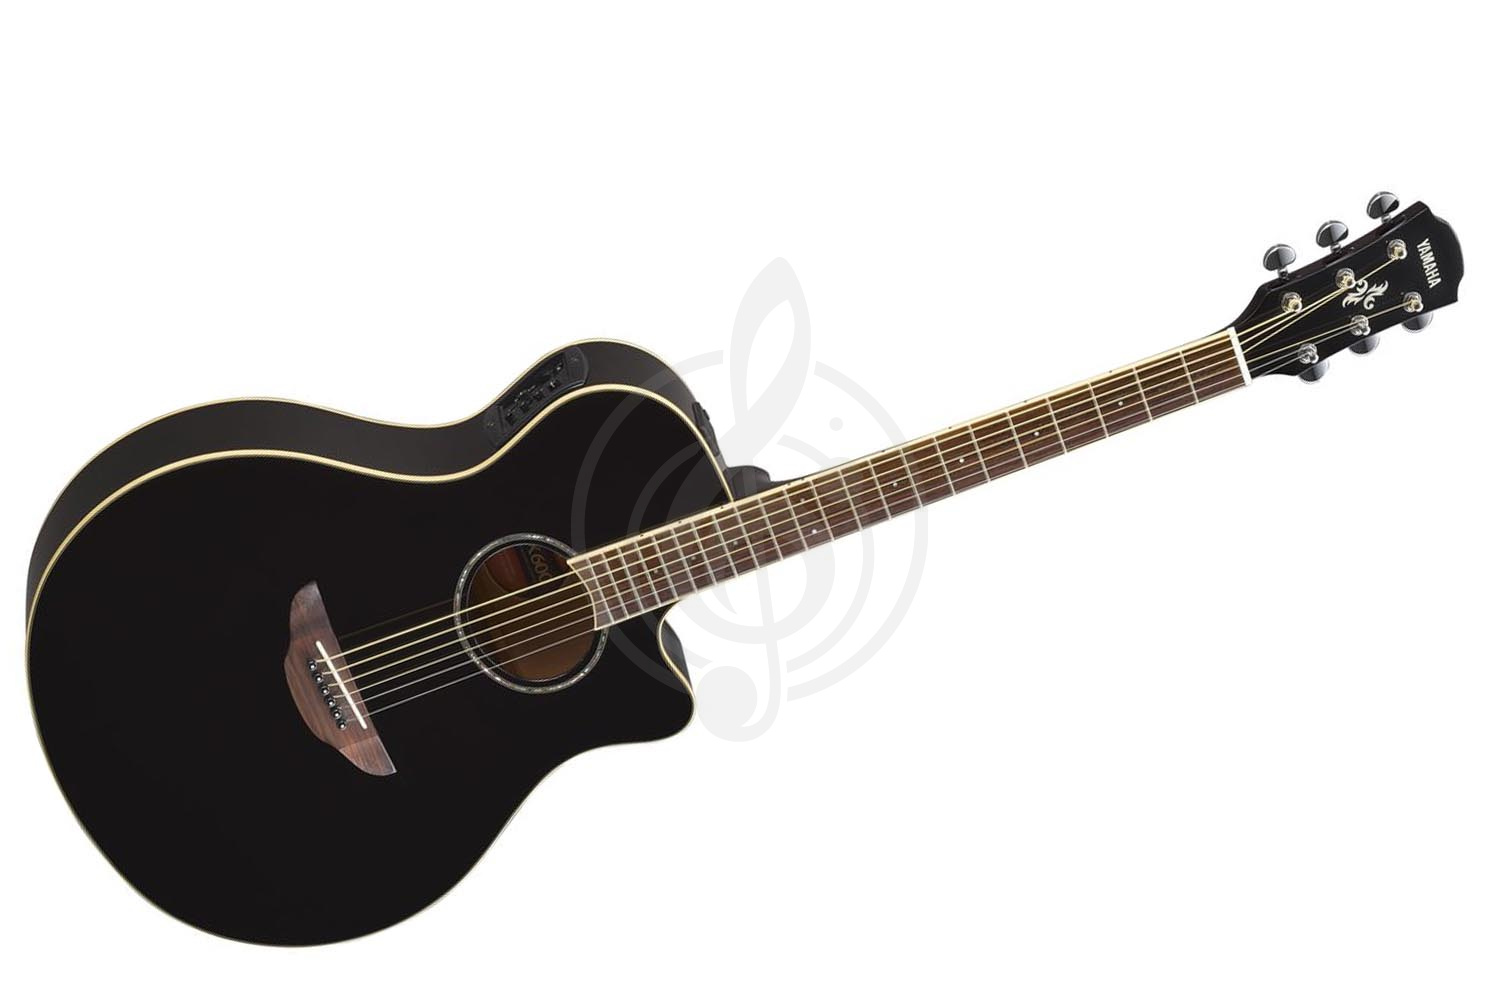 Электроакустическая гитара Электроакустические гитары Yamaha Yamaha APX600BL - электроакустическая гитара APX600 BLACK - фото 1